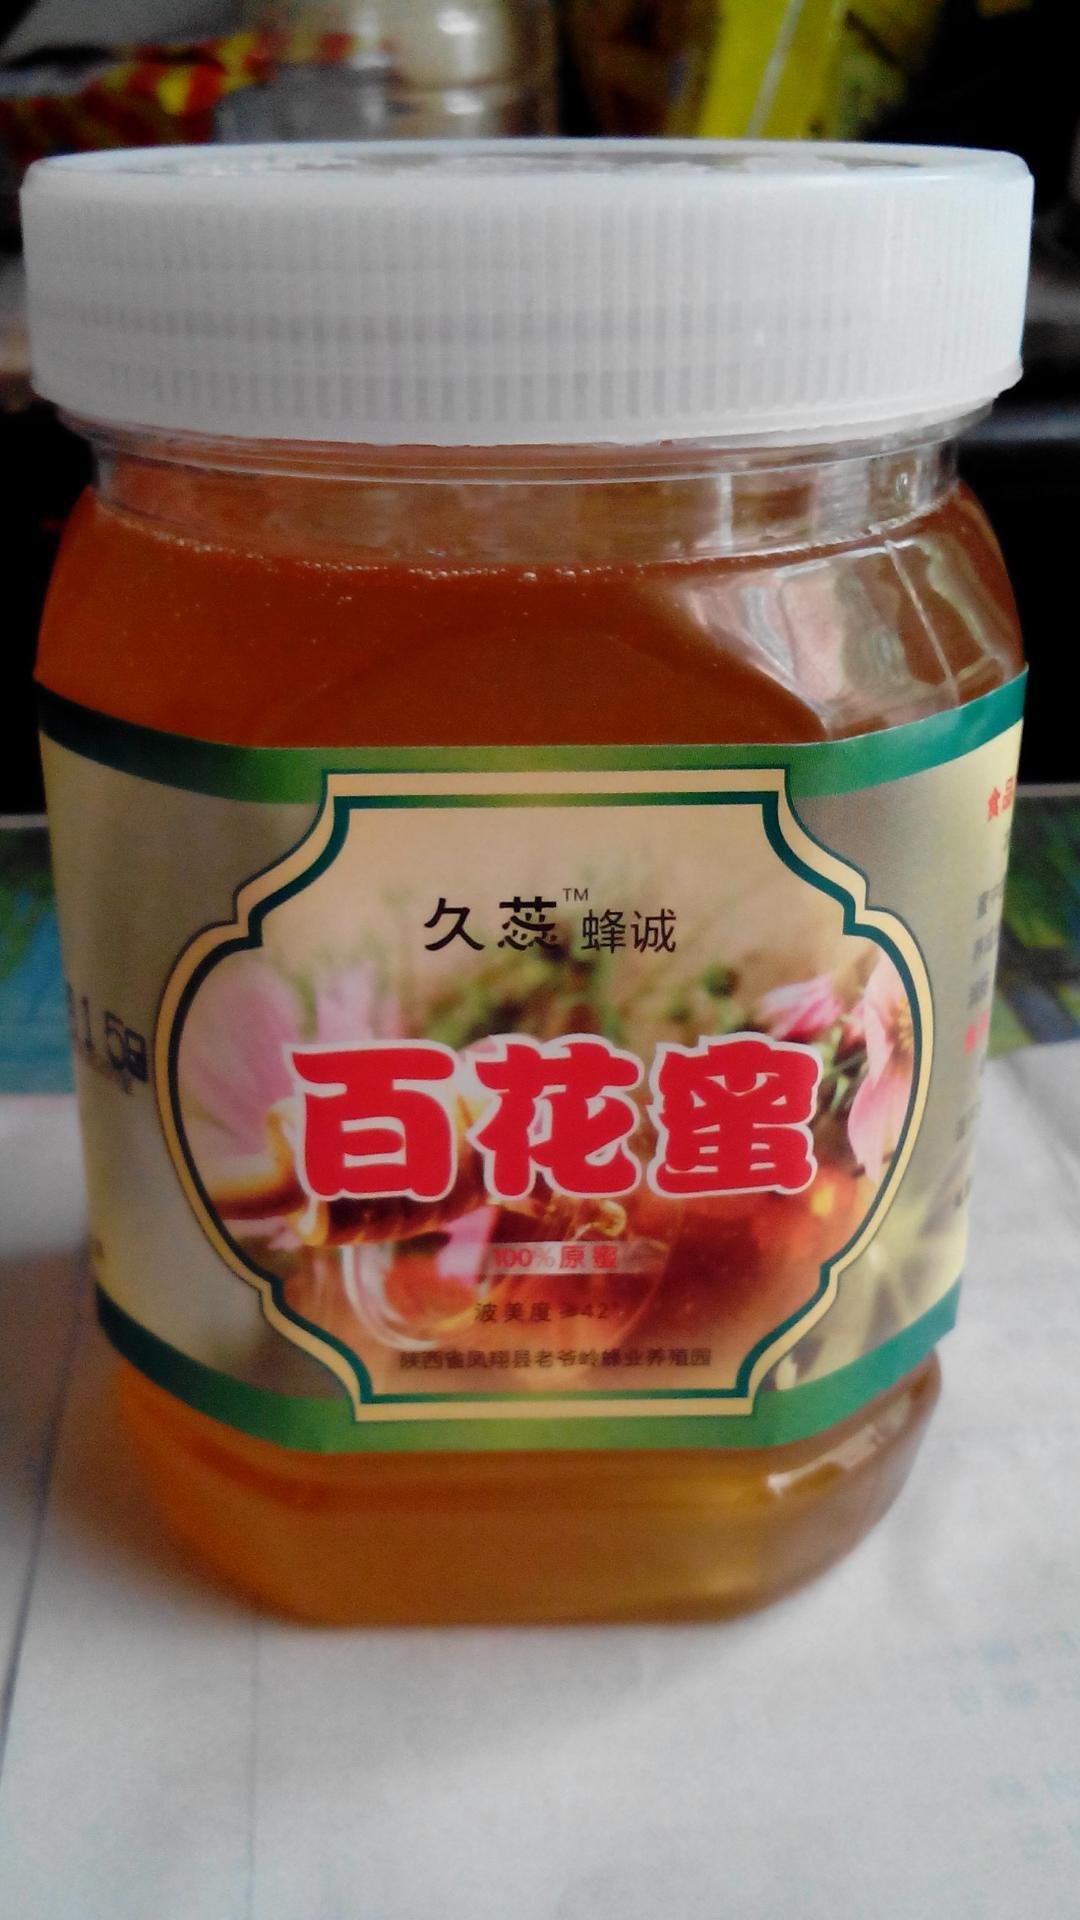 凤翔老爷岭百花蜂蜜， 2斤58元包邮